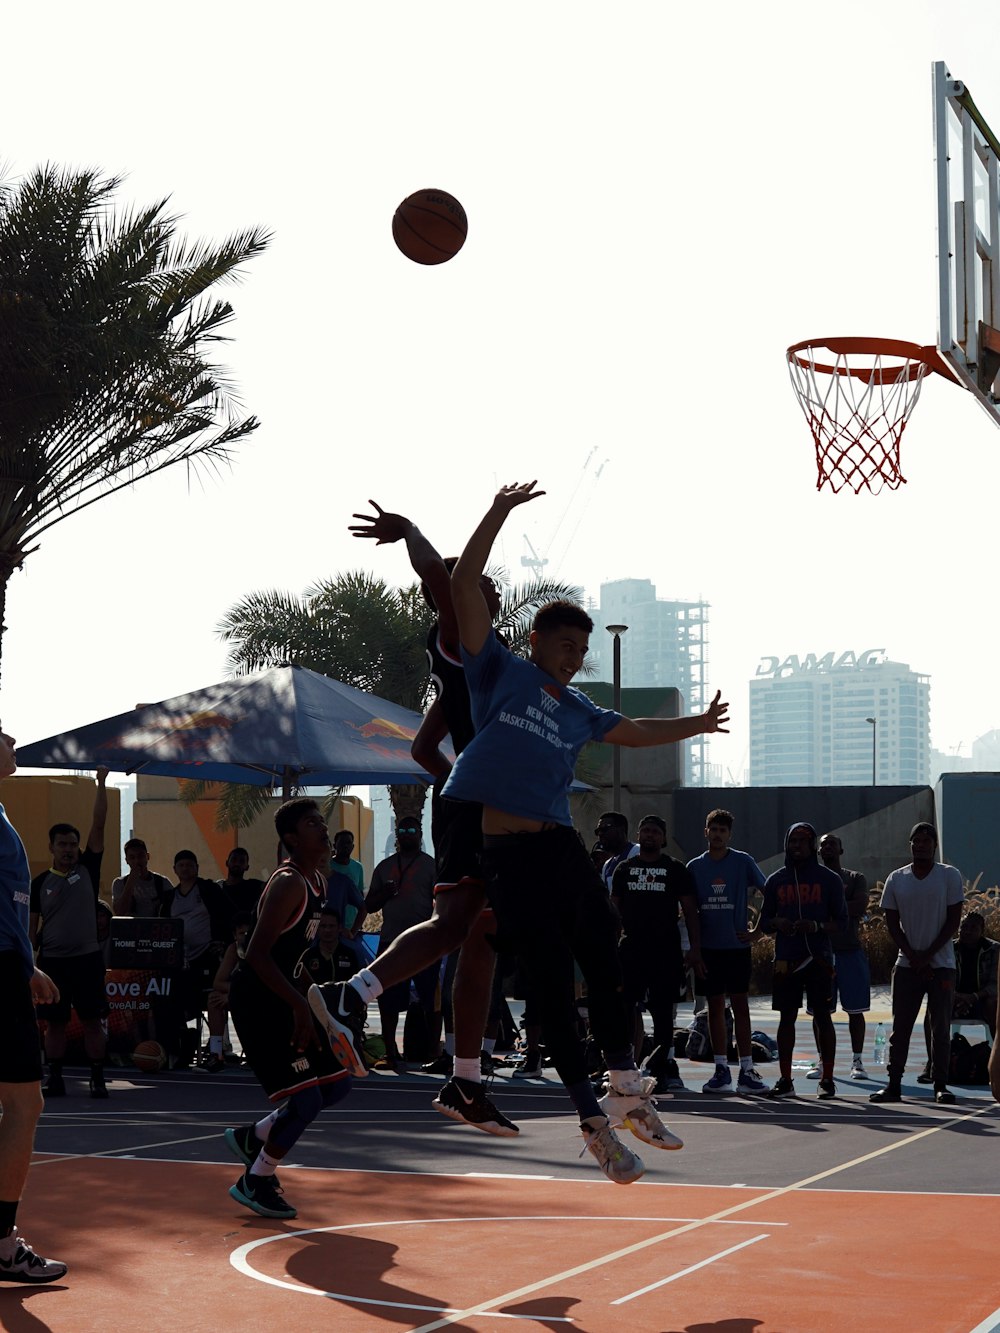 people playing basketball during daytime